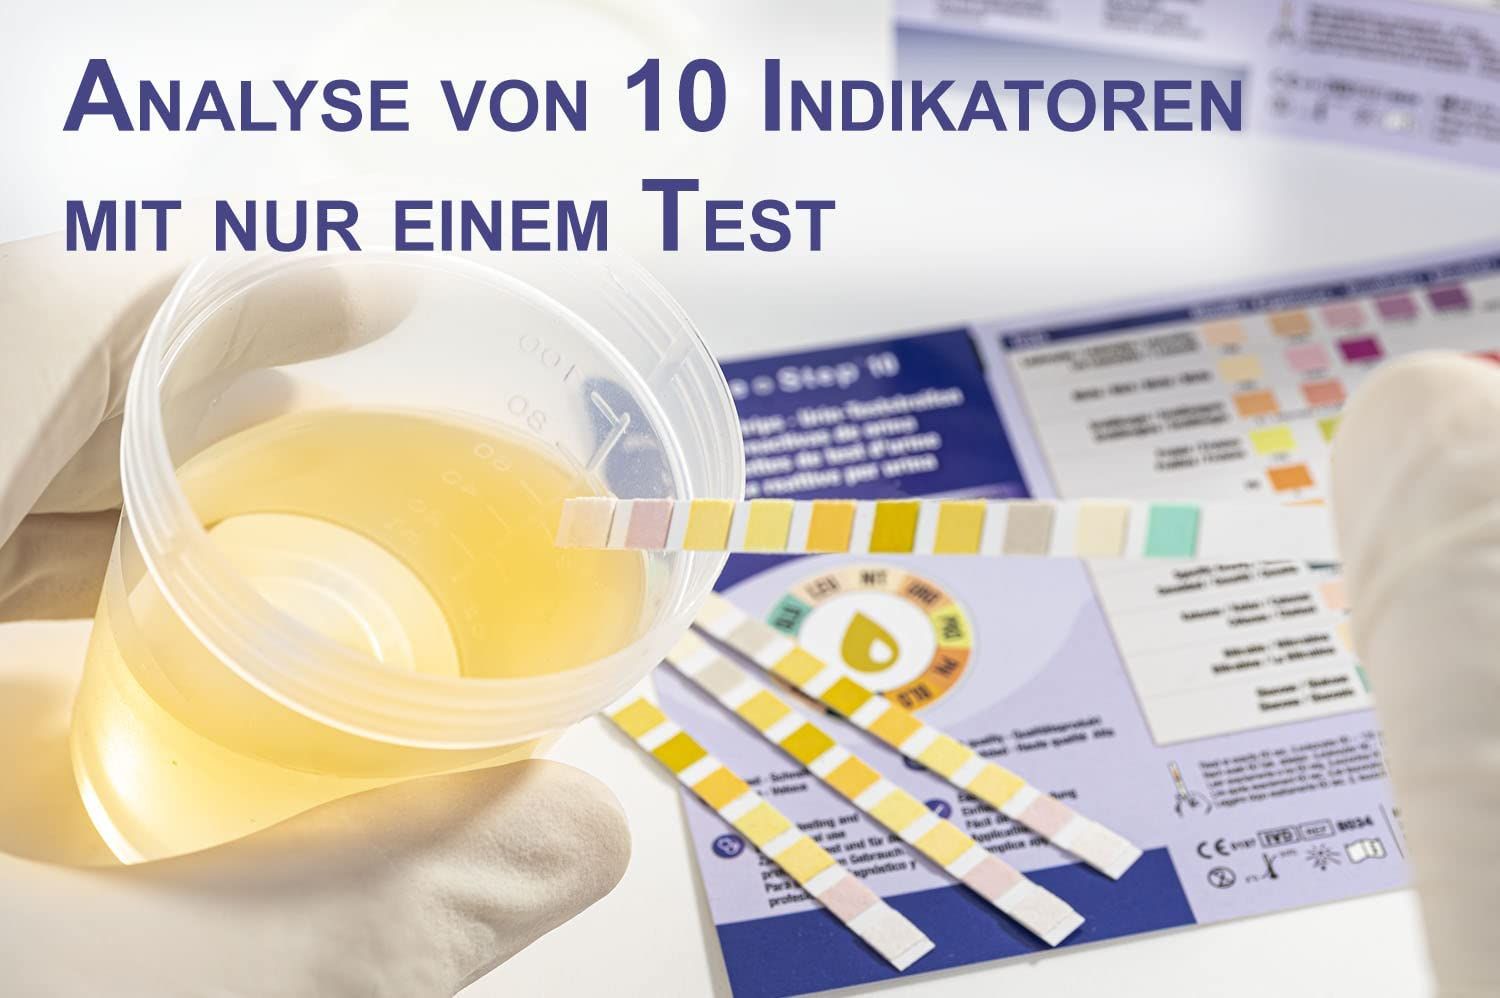 One+Step Urinteststreifen für 10 Indikatoren - Gesundheitstest inkl. Referenzfarbkarte